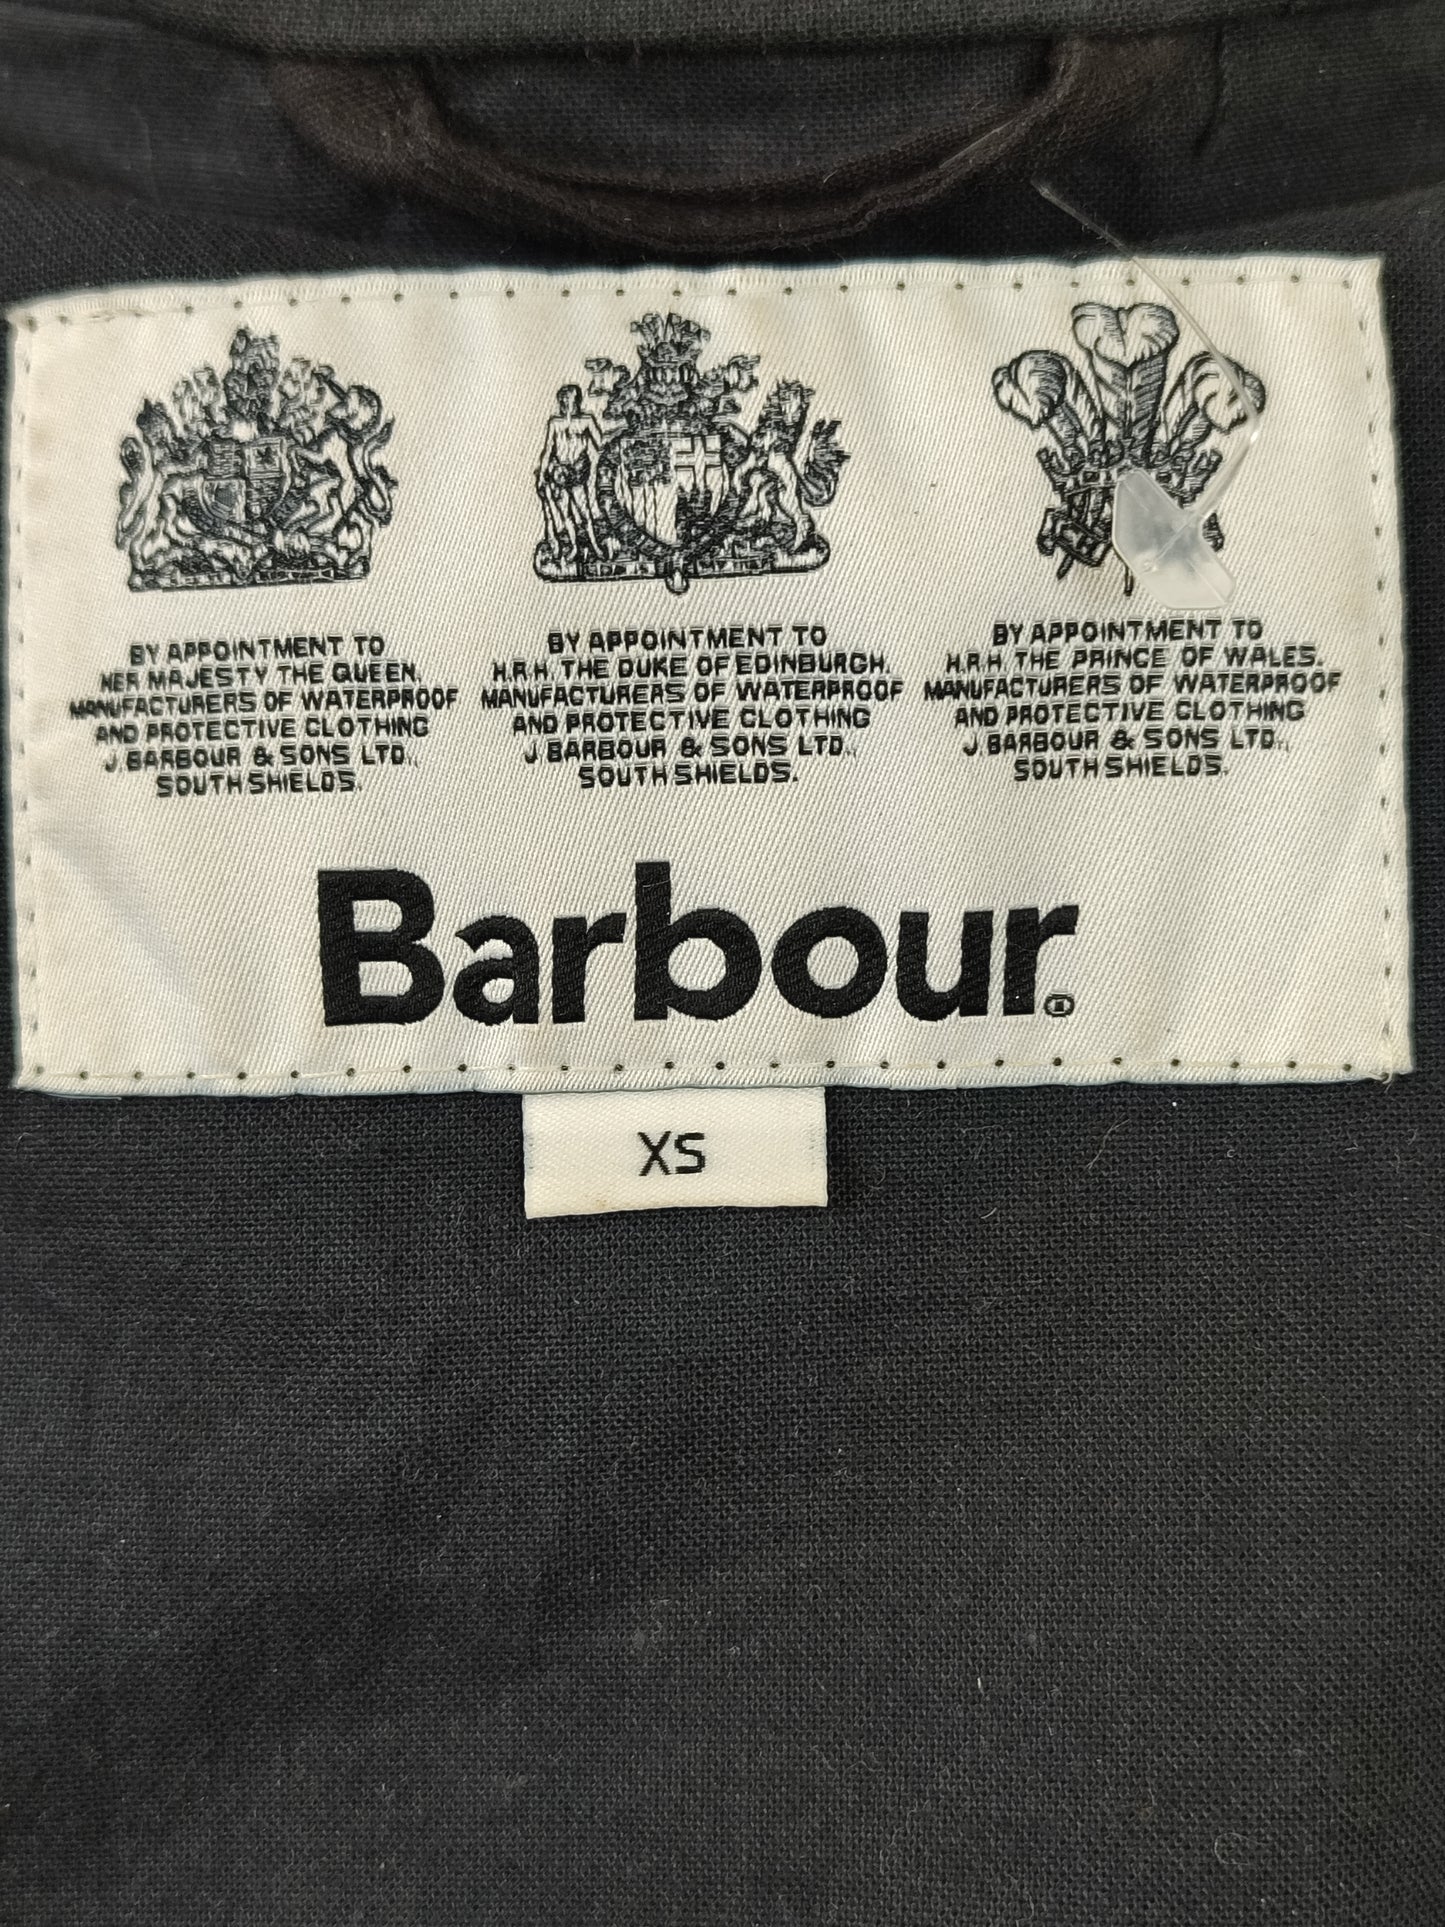 Giacca da uomo Barbour cerata blu corta con cappuccio XSmall-Man Beacon Pass Wax blue jacket